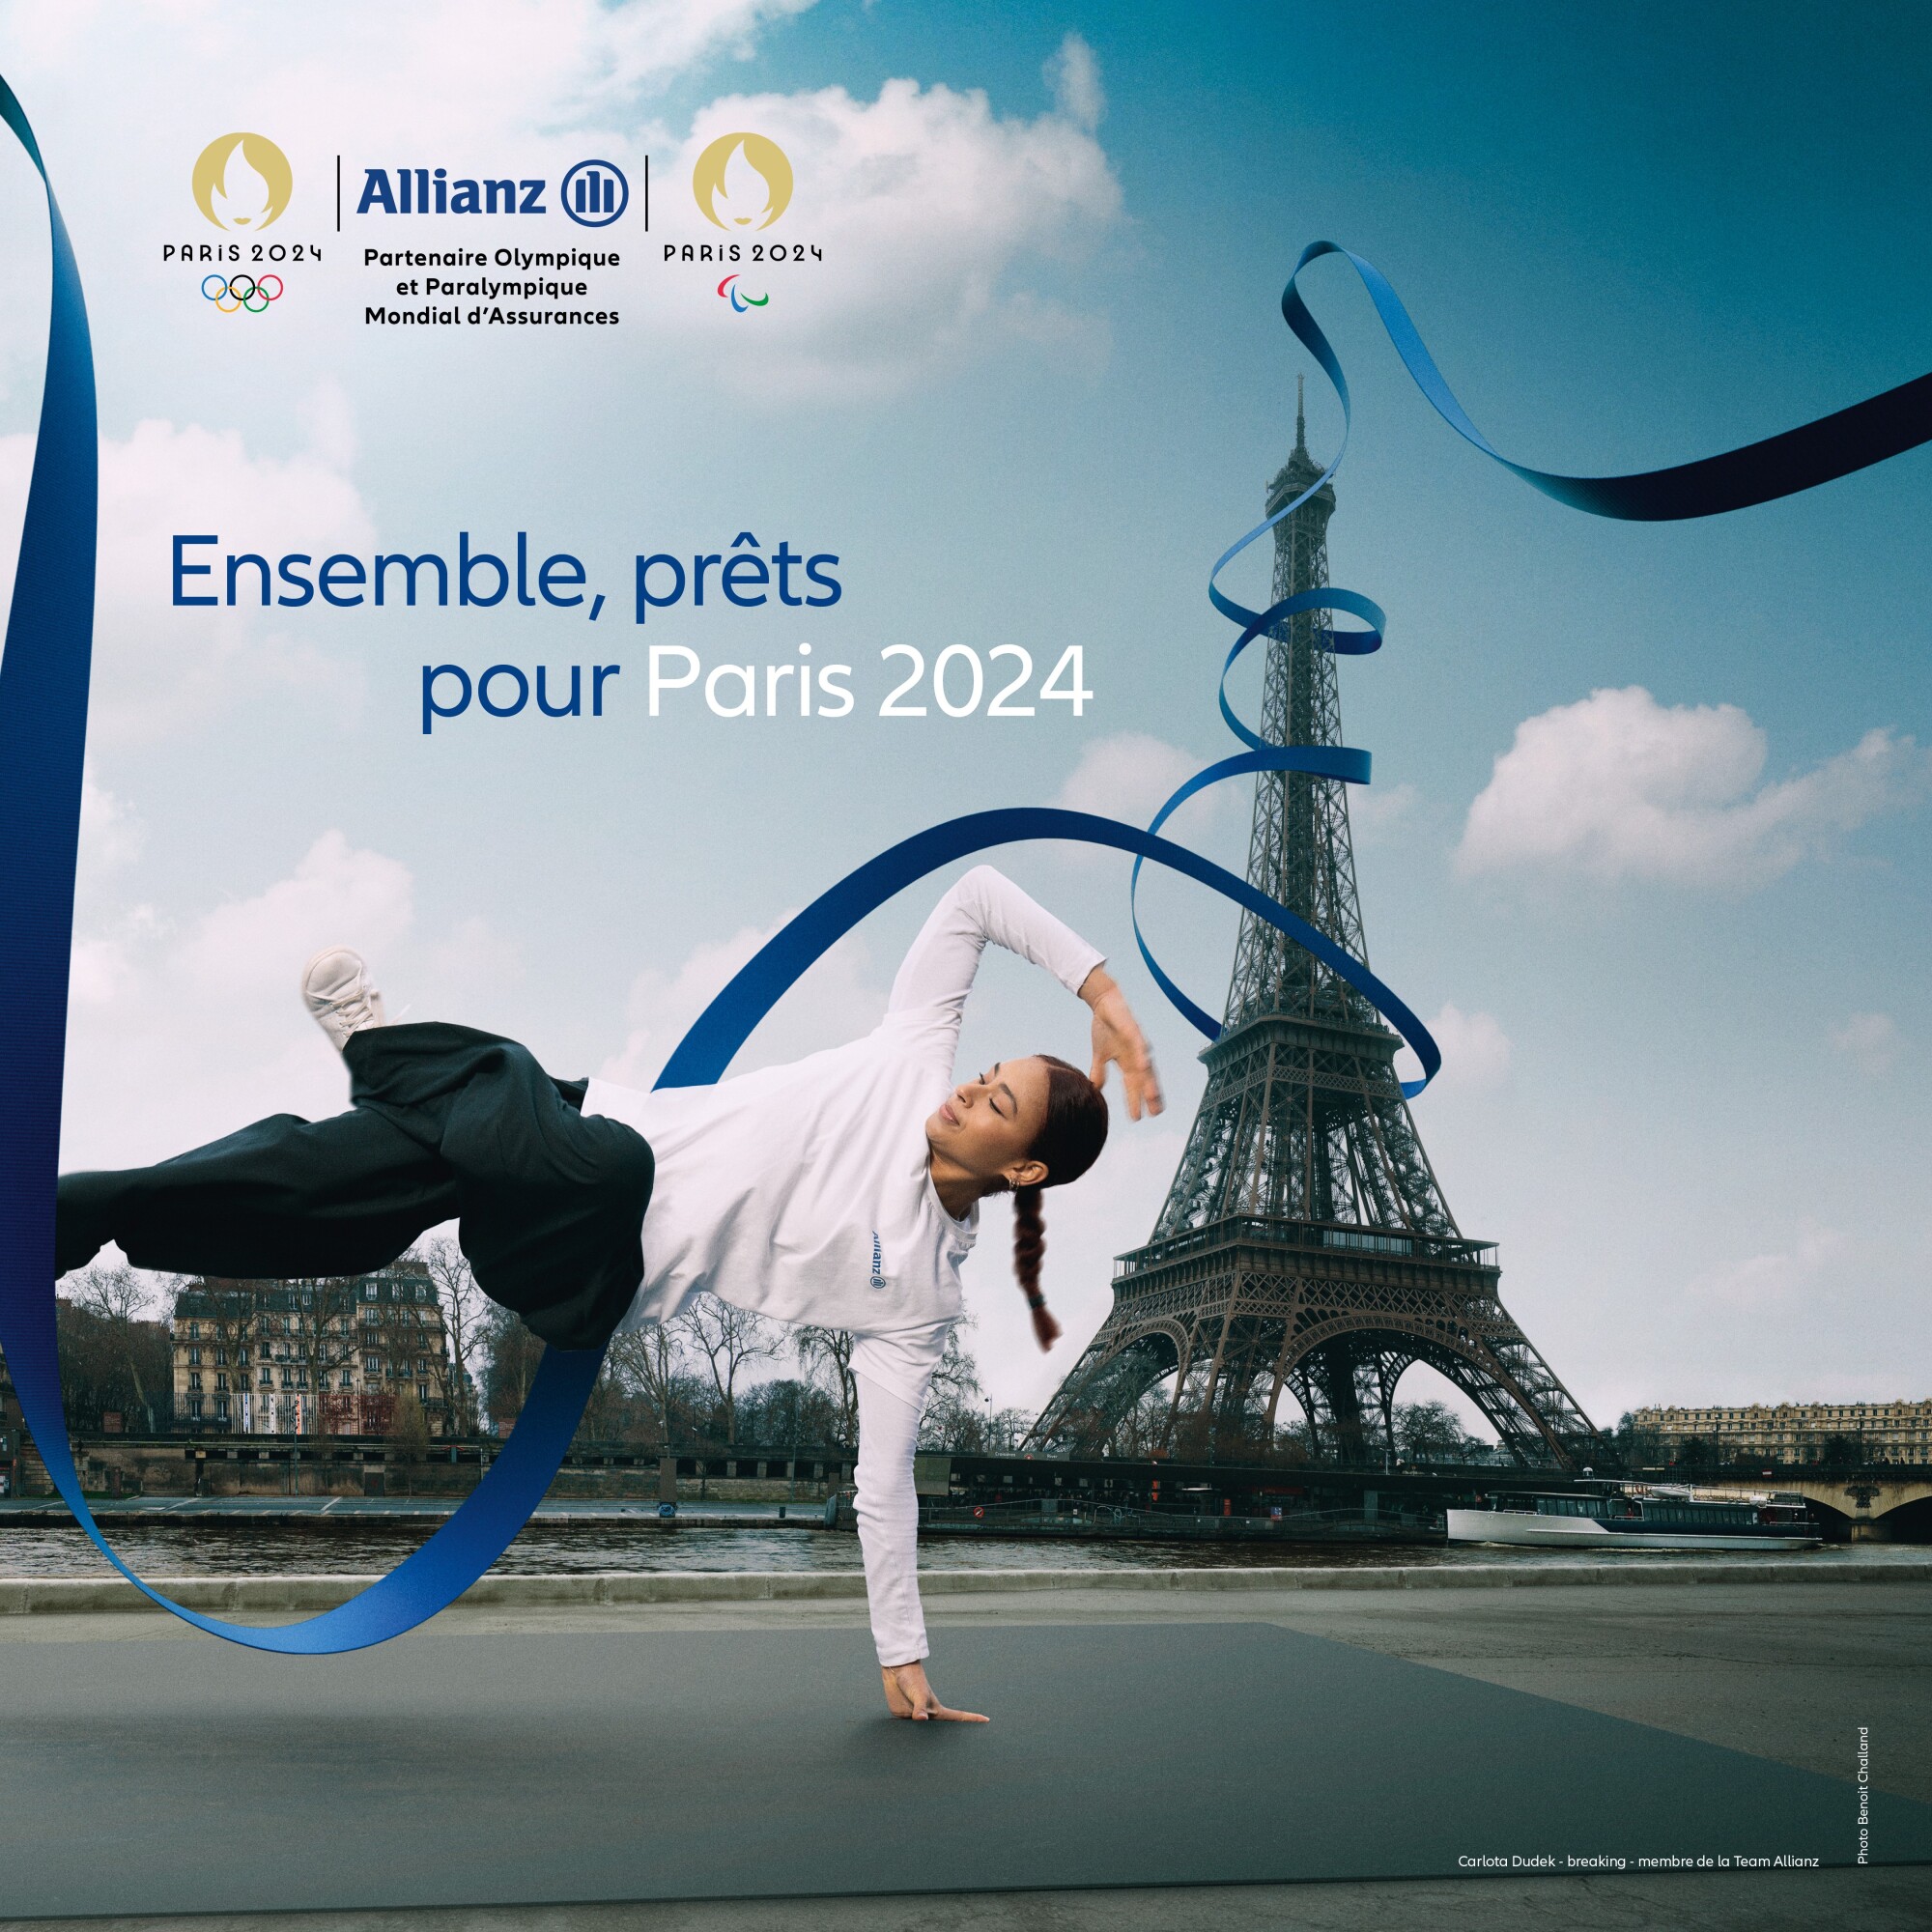 Allianz France propose un passage de témoins entre les athlètes et le public à 100 jours de Paris 2024